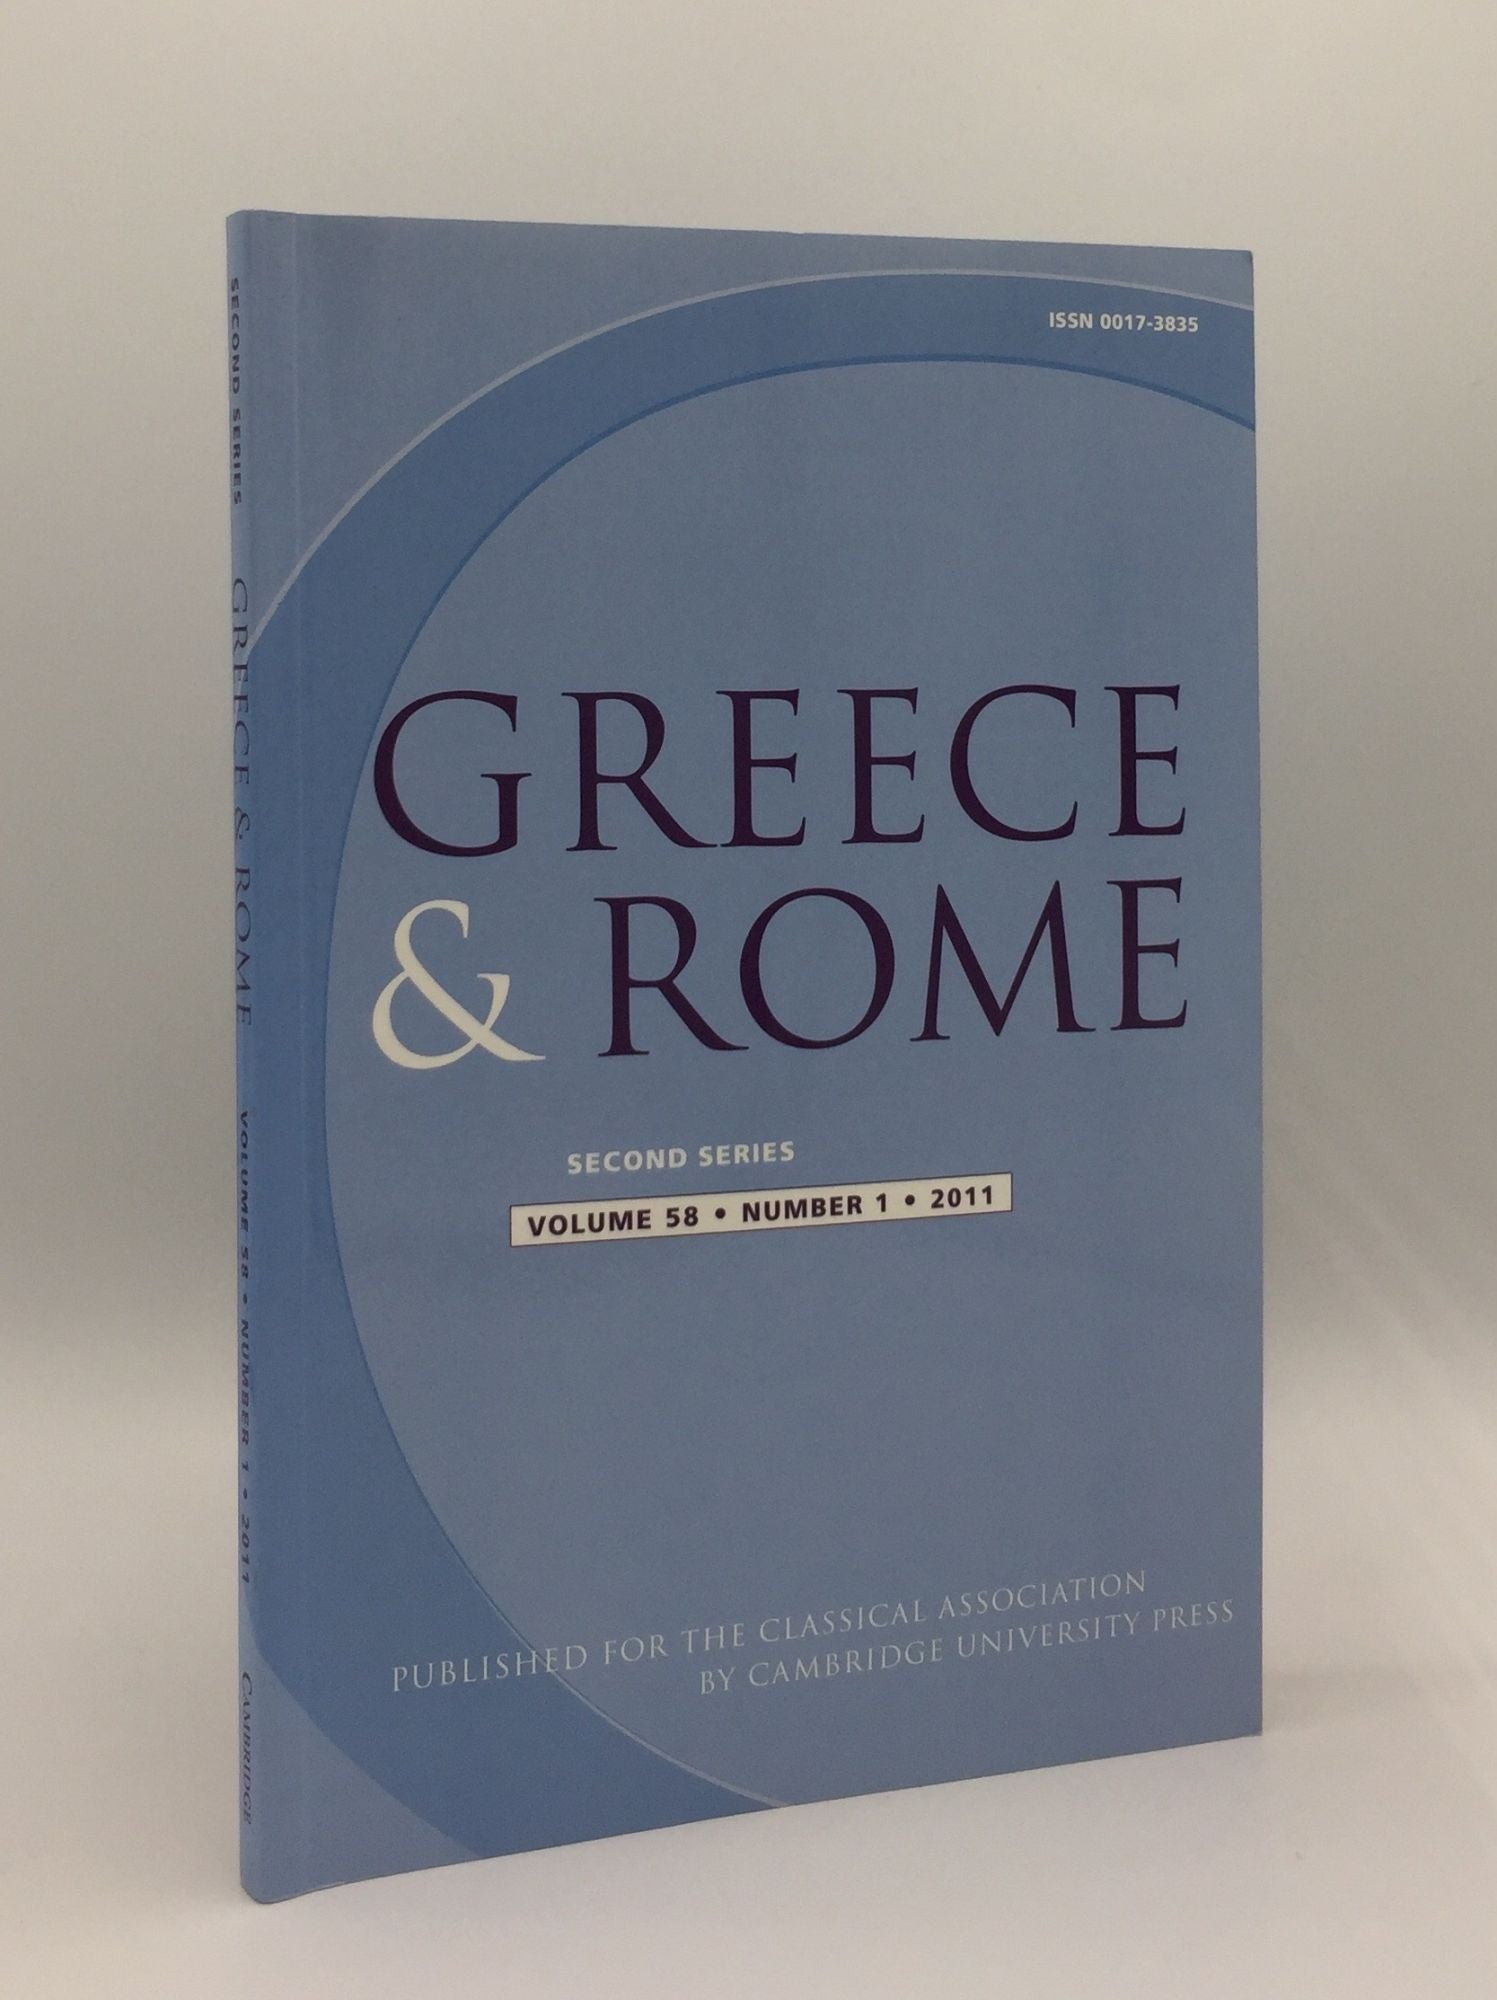 TAYLOR J., IZZET V., SHORROCK R. - Greece & Rome Second Series April 2011 Vol. 58 No. 1